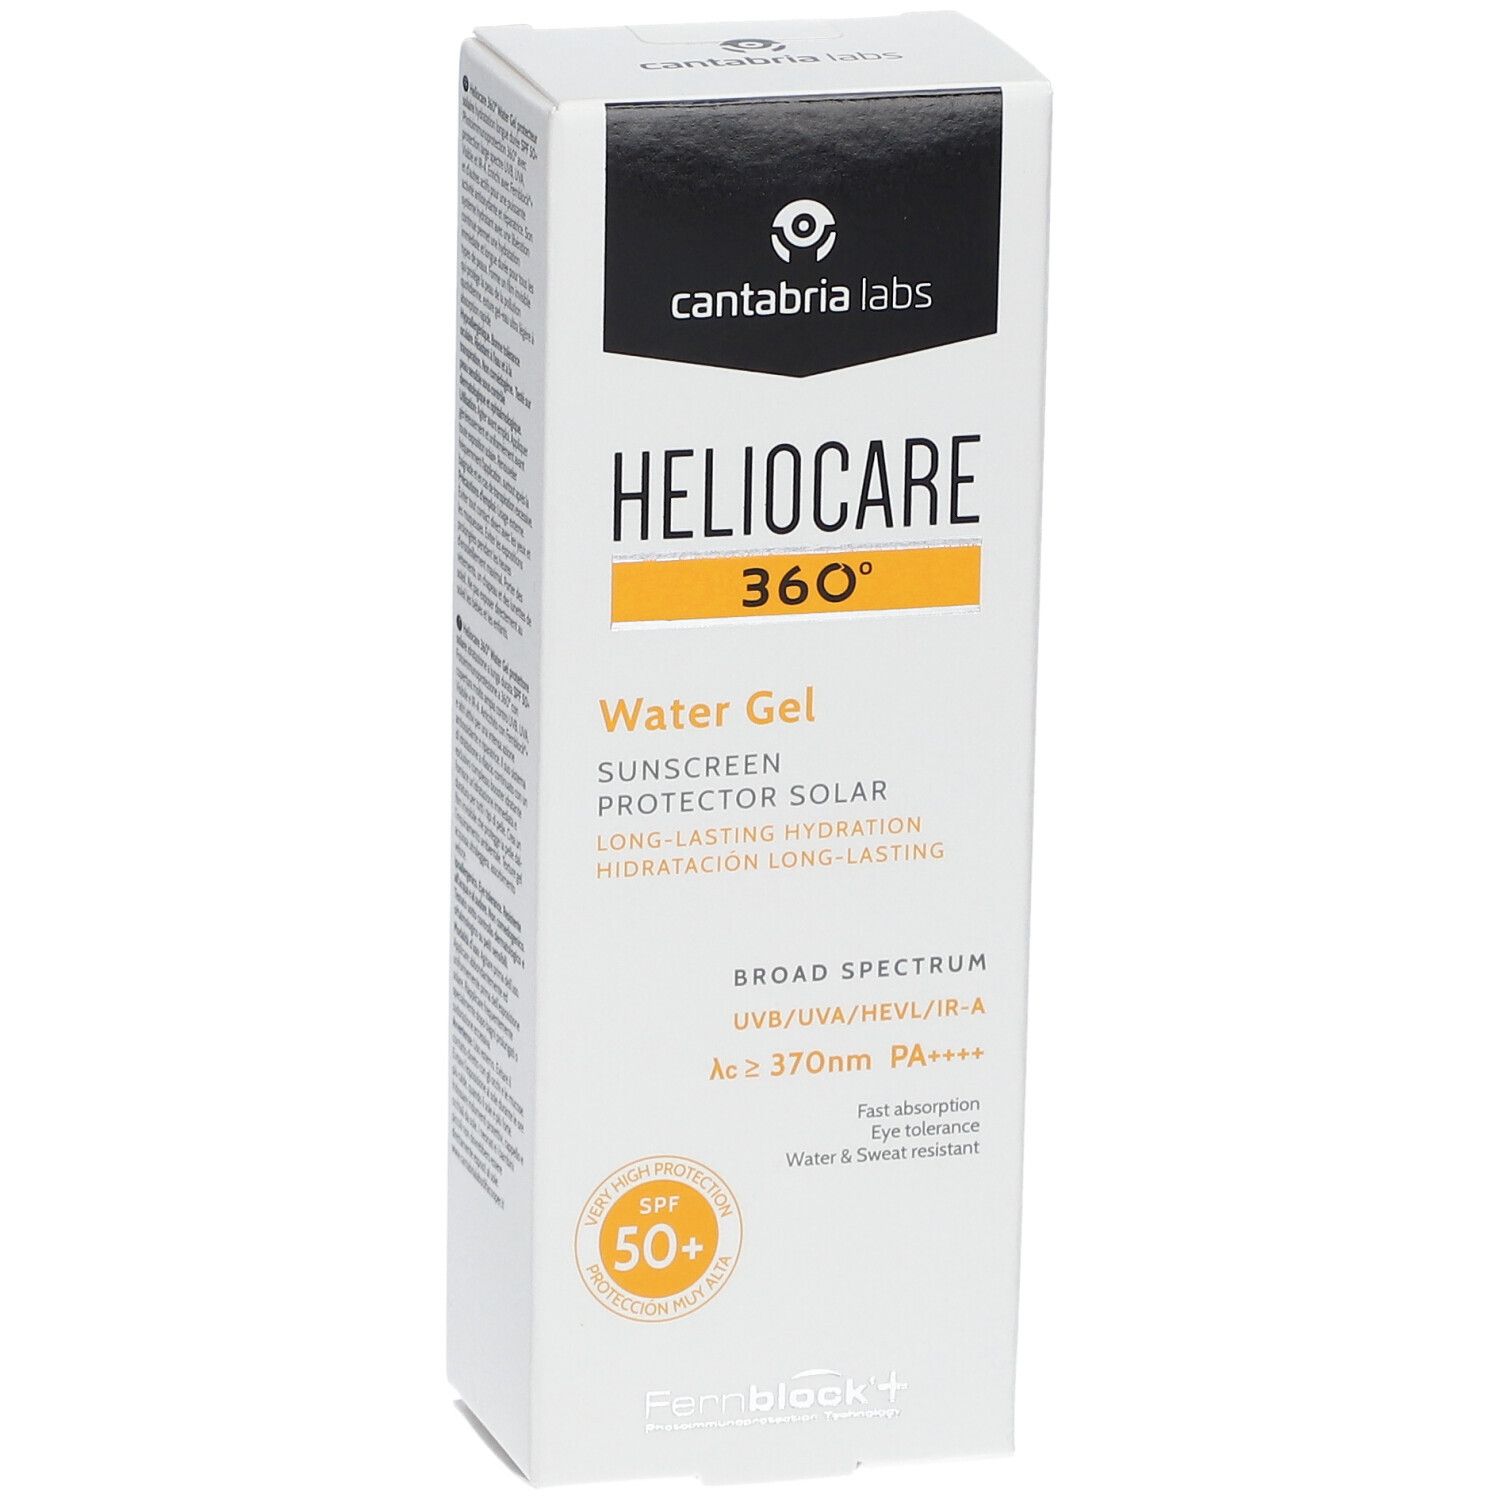 HELIOCARE® 360° Water Gel LSF 50+